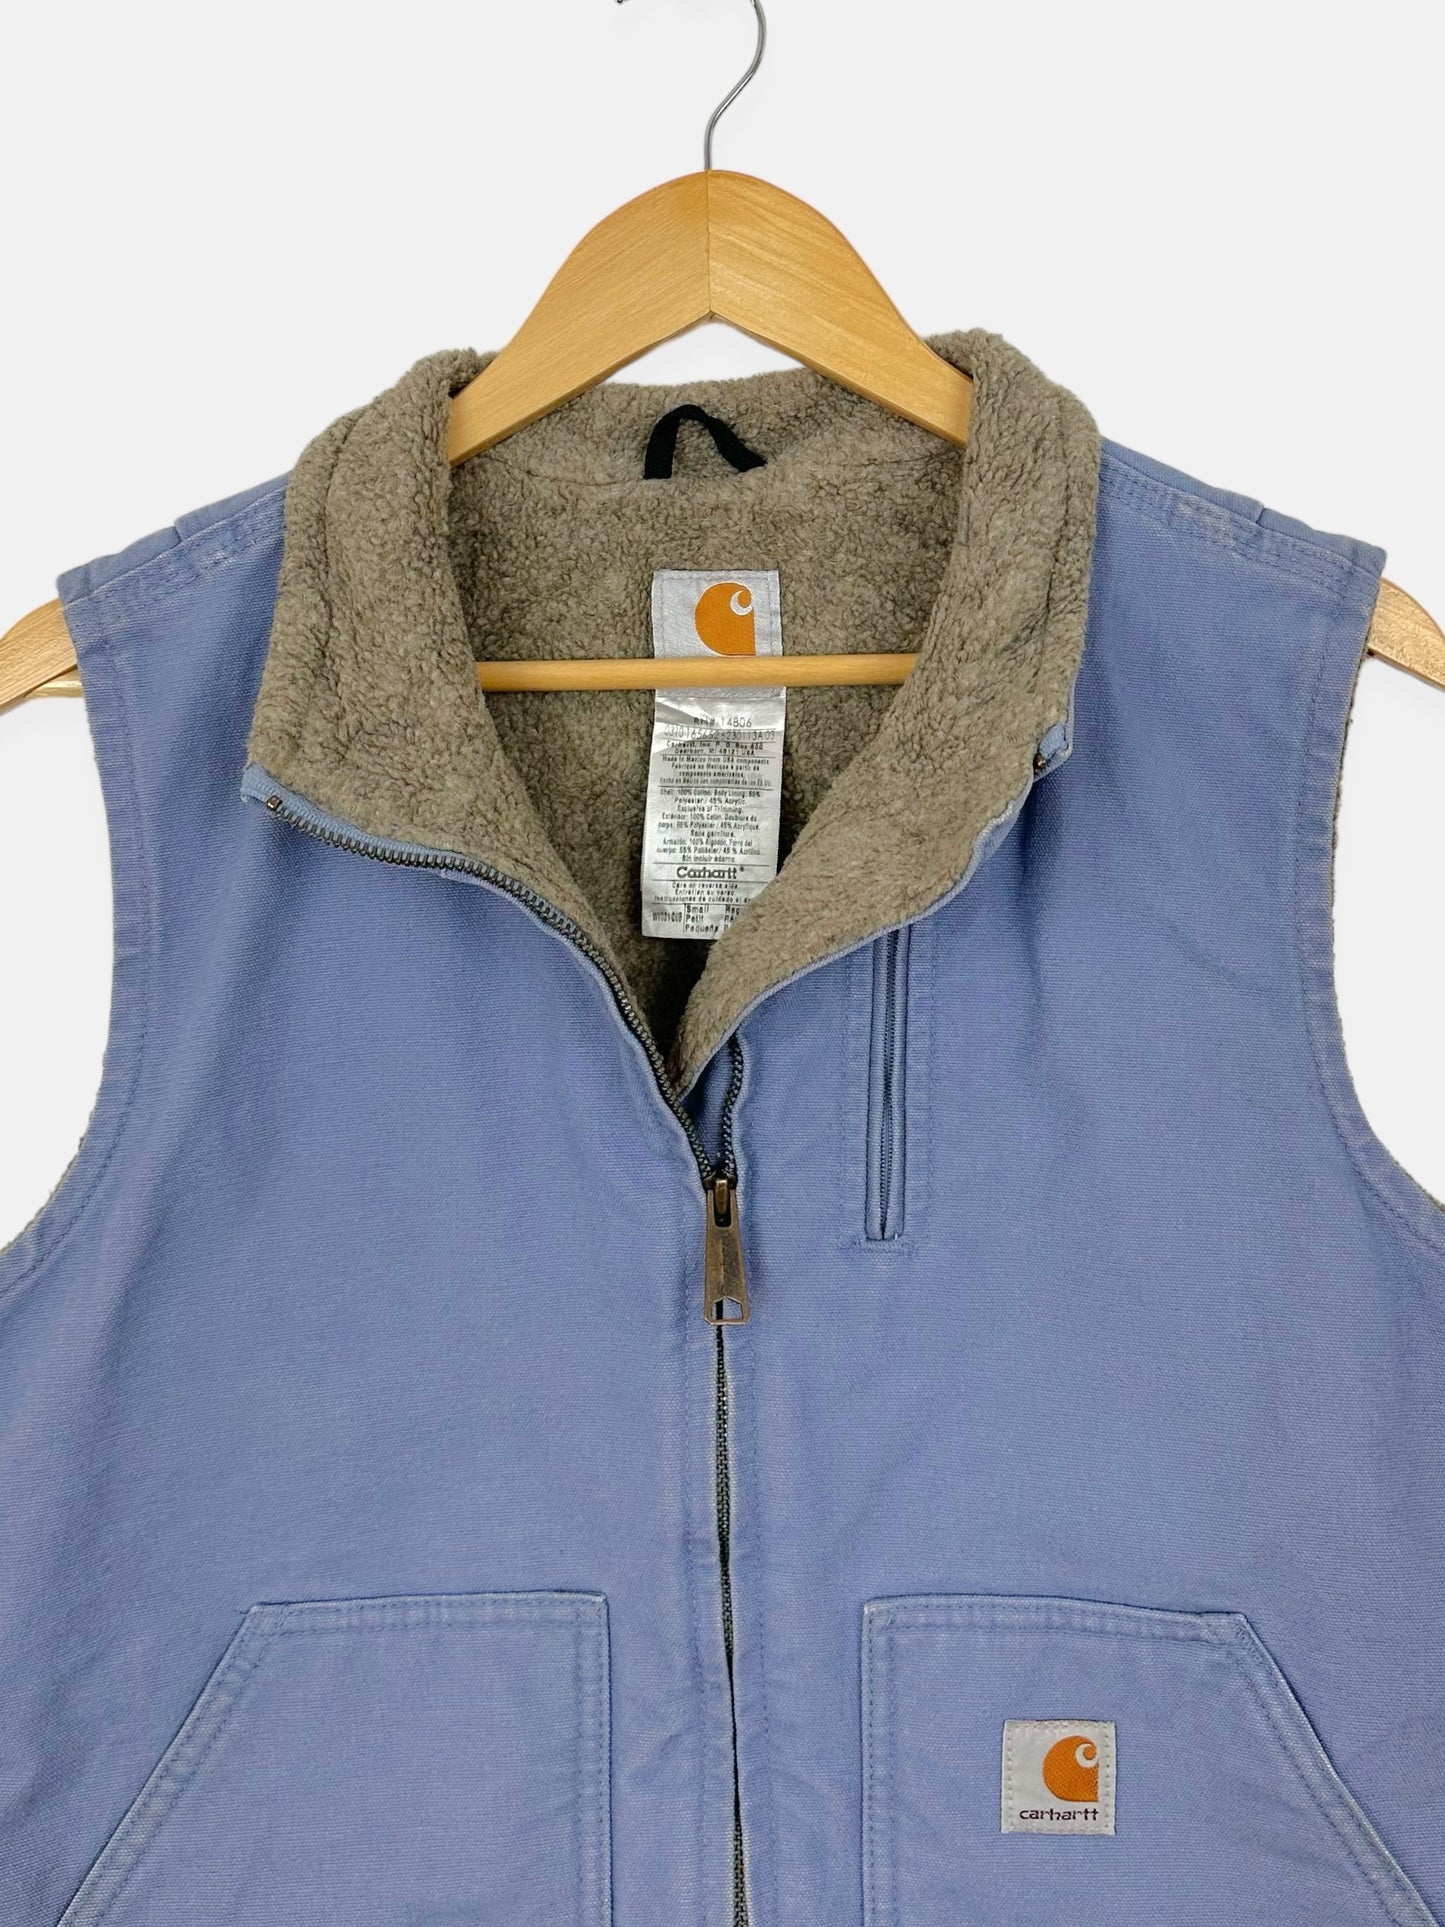 90's Carhartt Heavy Duty Vintage Sherpa Lined Vest Size 8-10